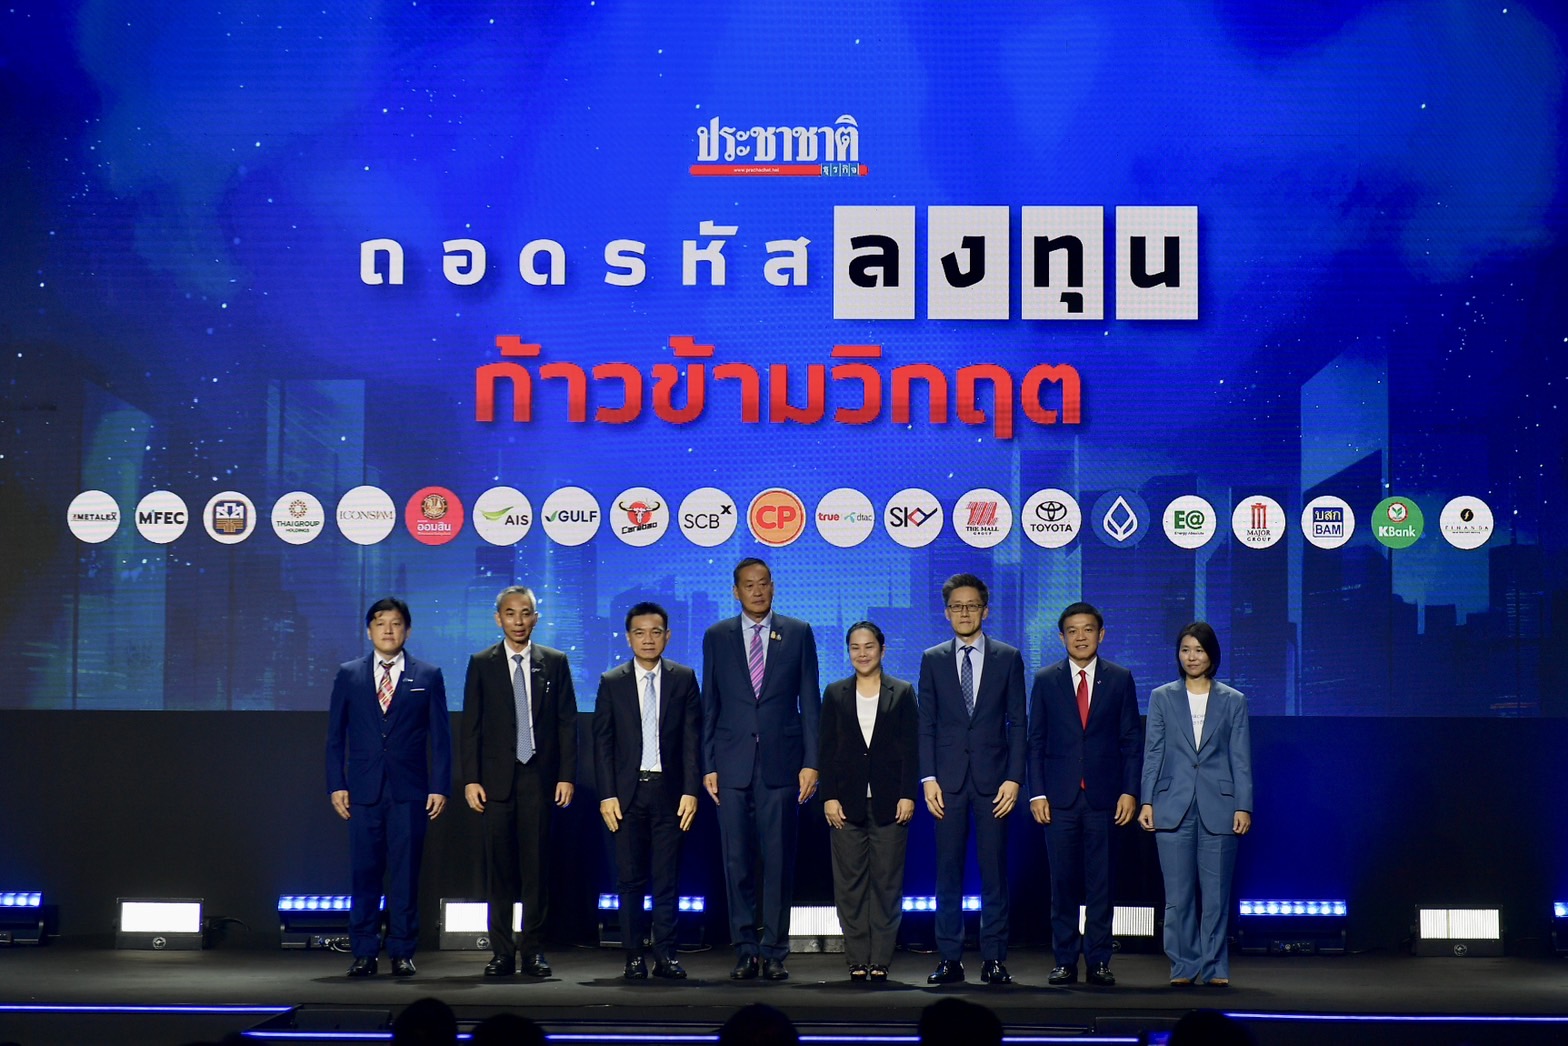 นายกฯ ปาฐกถาพิเศษ “Next chapter ประเทศไทย” ย้ำรัฐบาลนี้จะทำให้ดีที่สุด เพื่อผลักดันเศรษฐกิจไปข้างหน้า